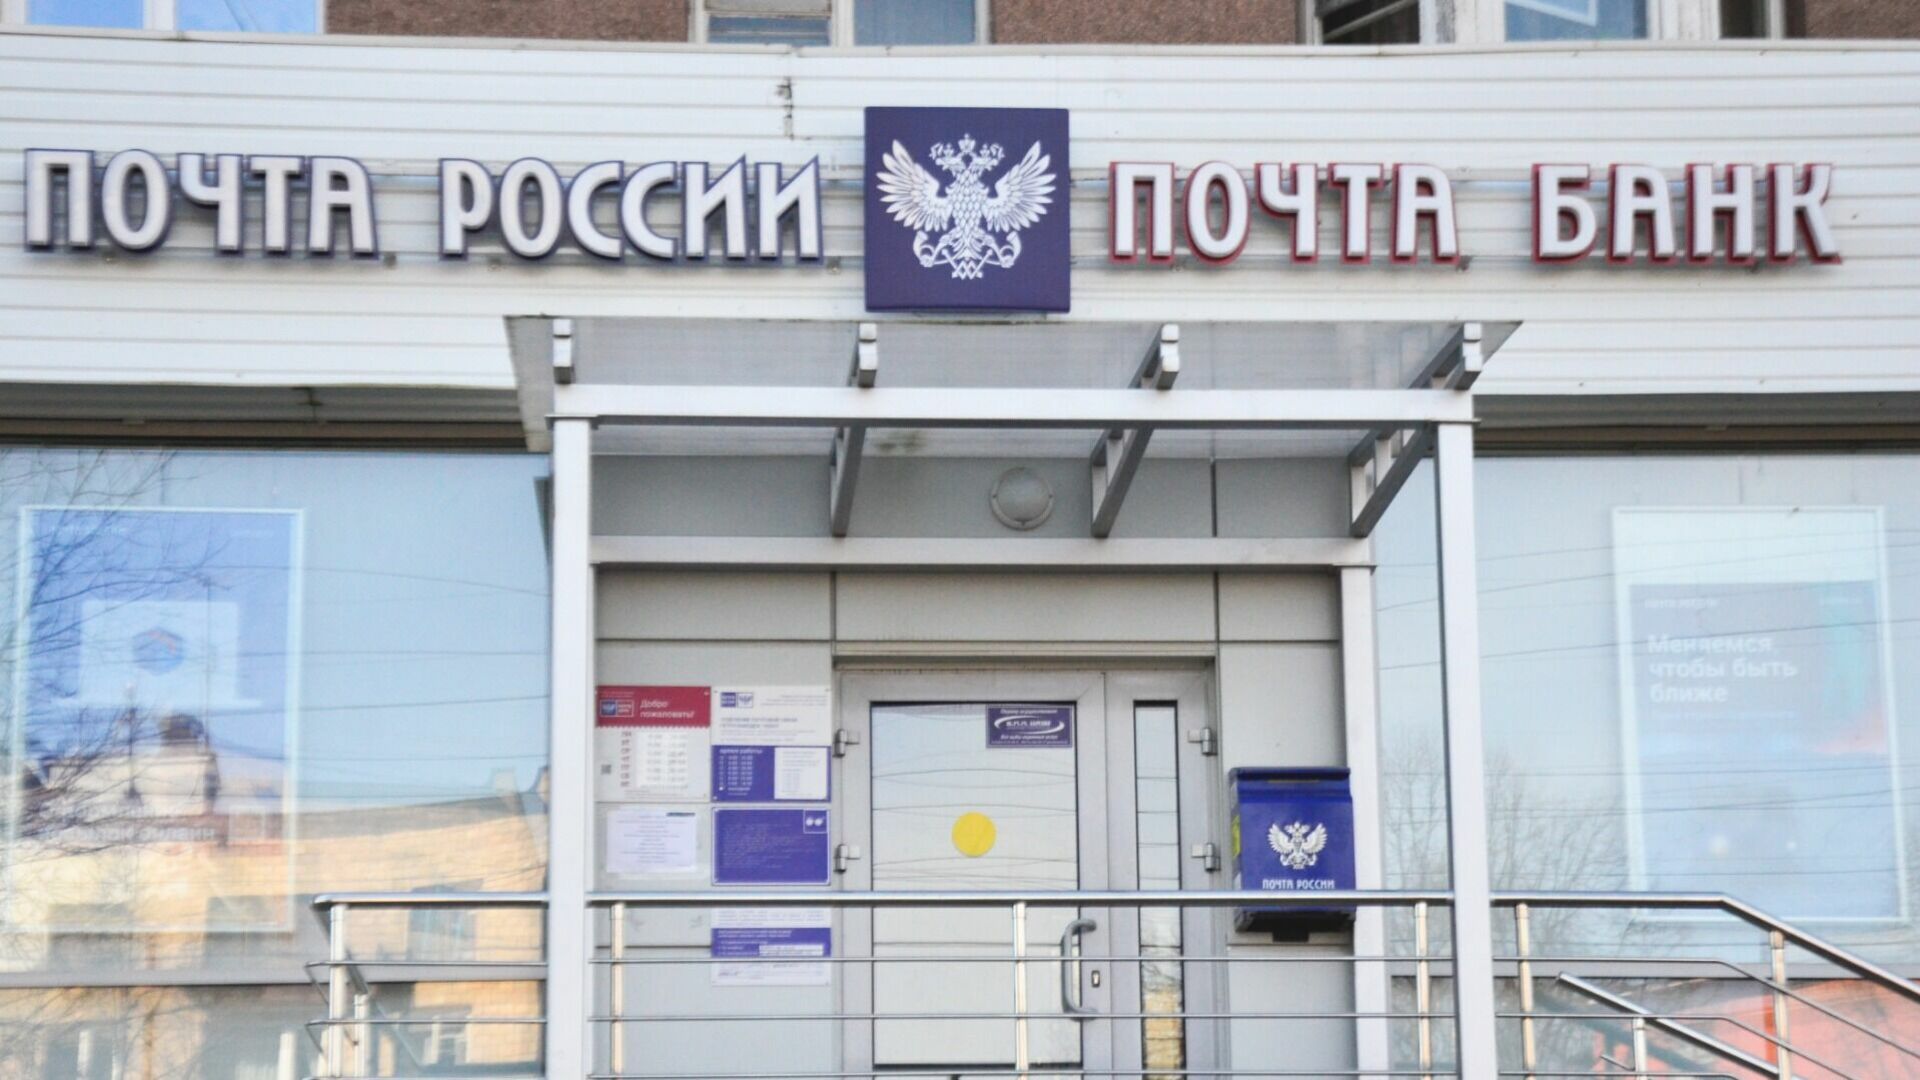 Жители Ростовской области с помощью "Почты России" смогут бесплатно отправлять посылки до 10 килограмм в зону СВО